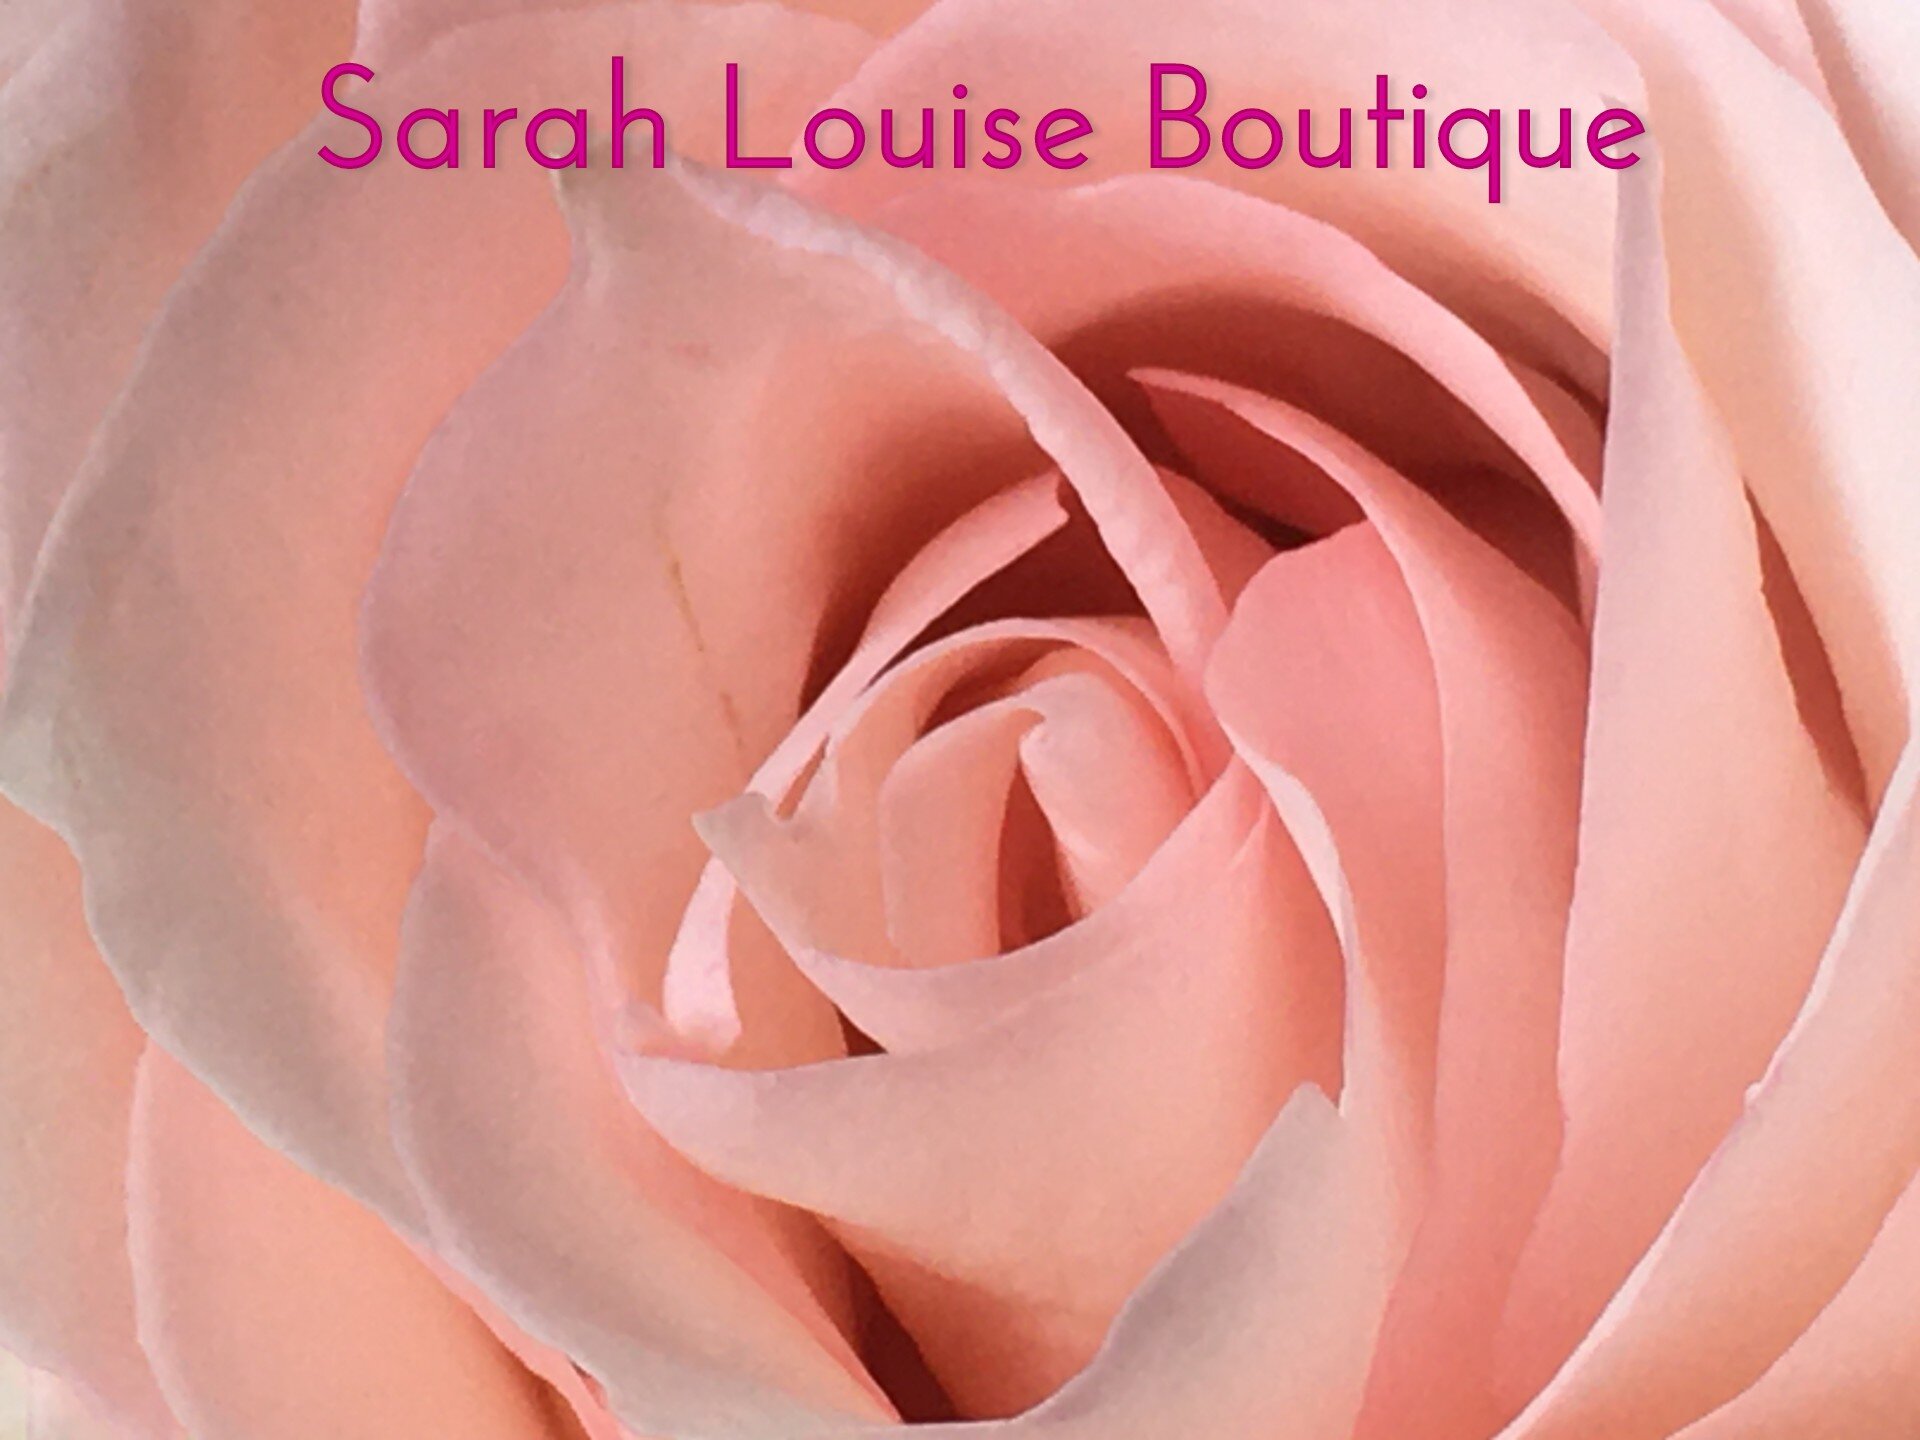 Sarah Louise Boutique